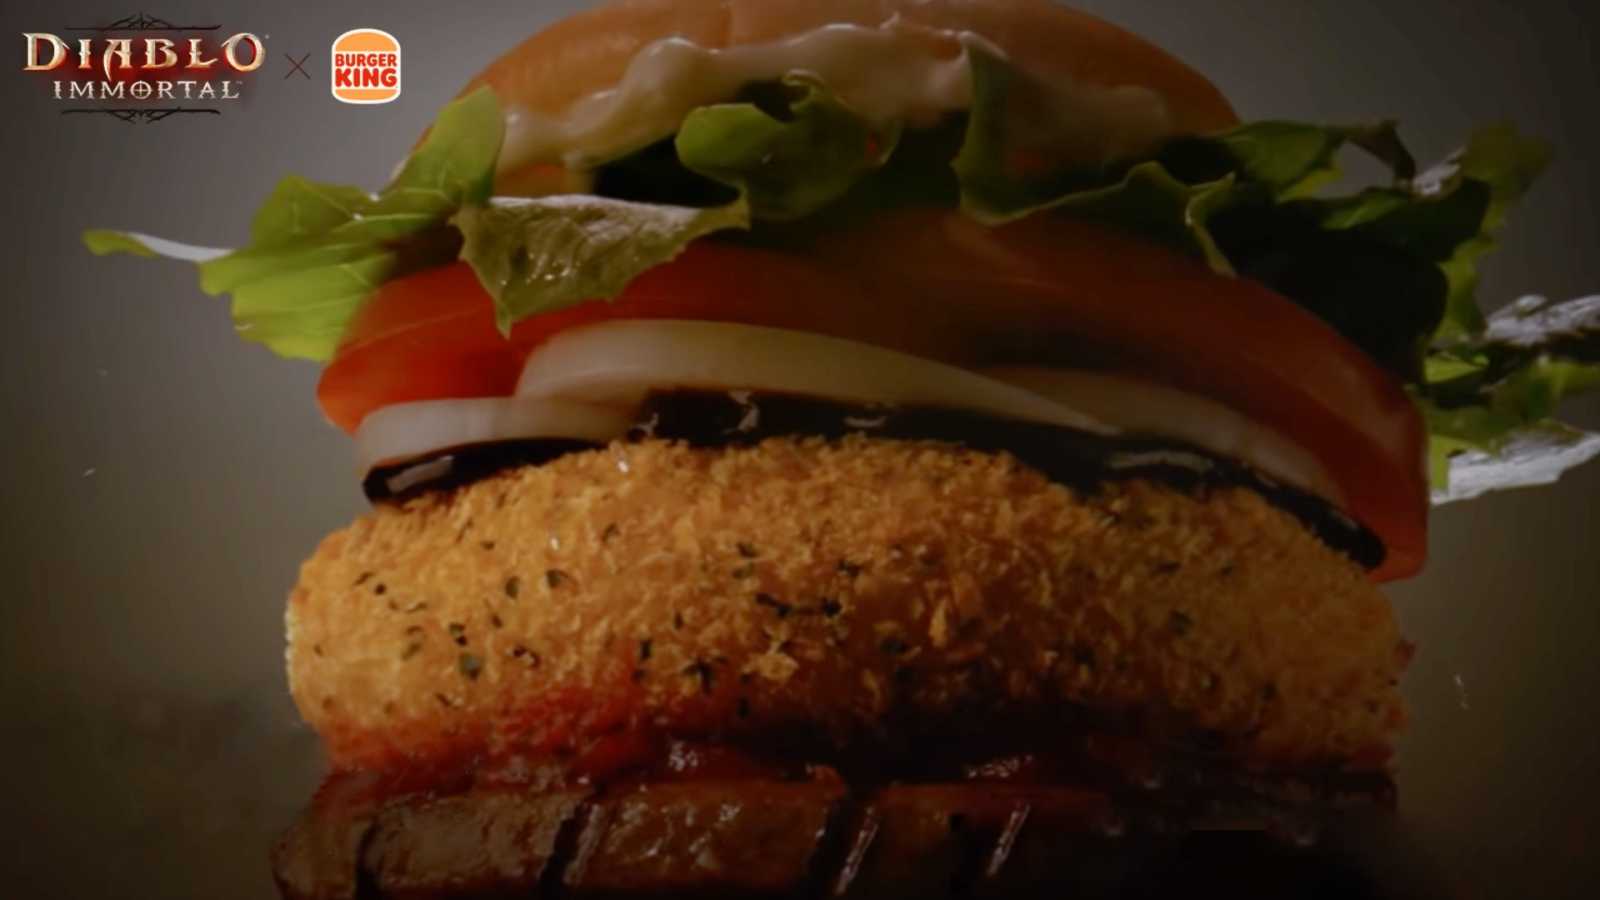 Korejský Burger King připravil menu ve stylu Diablo Immortal. Pochutnali byste si?